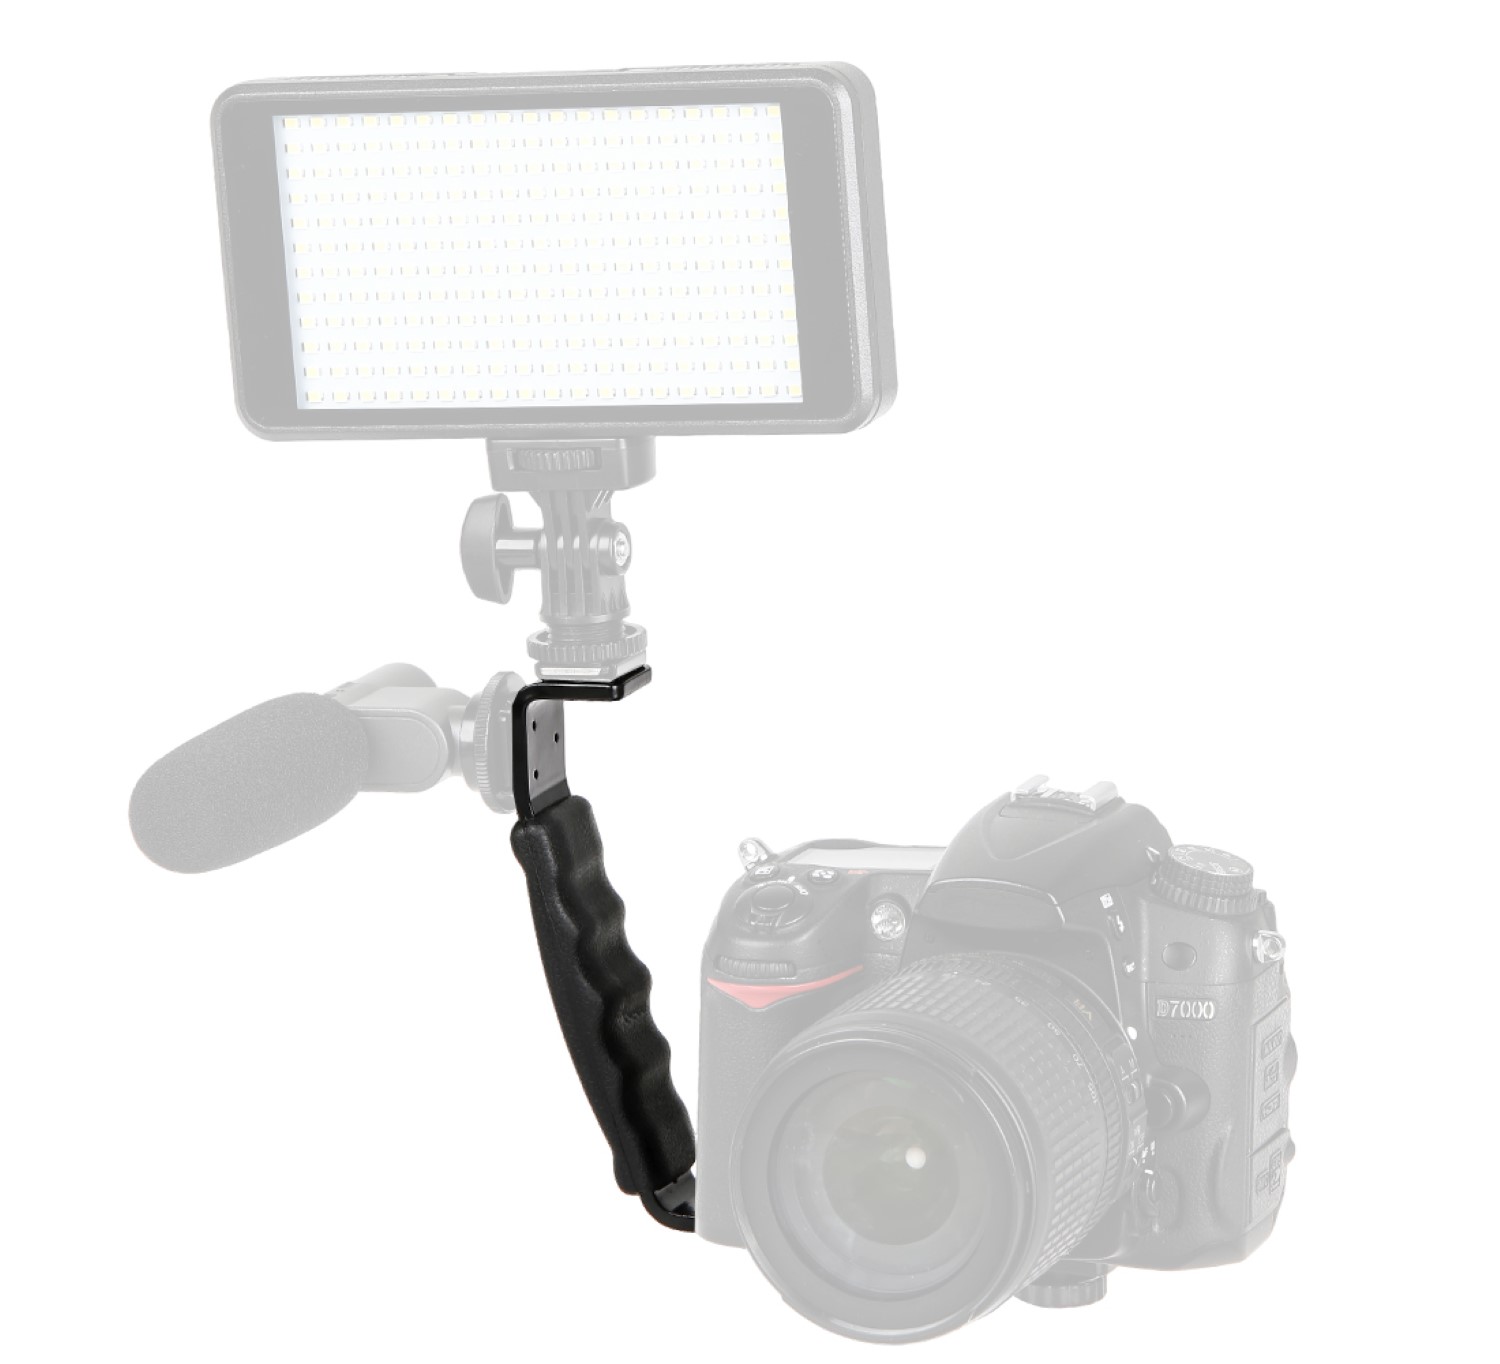 Blitzlichthalter in L-Form passt für die meisten Kameras und Camcorder. Bequemer Handgriff LS-37